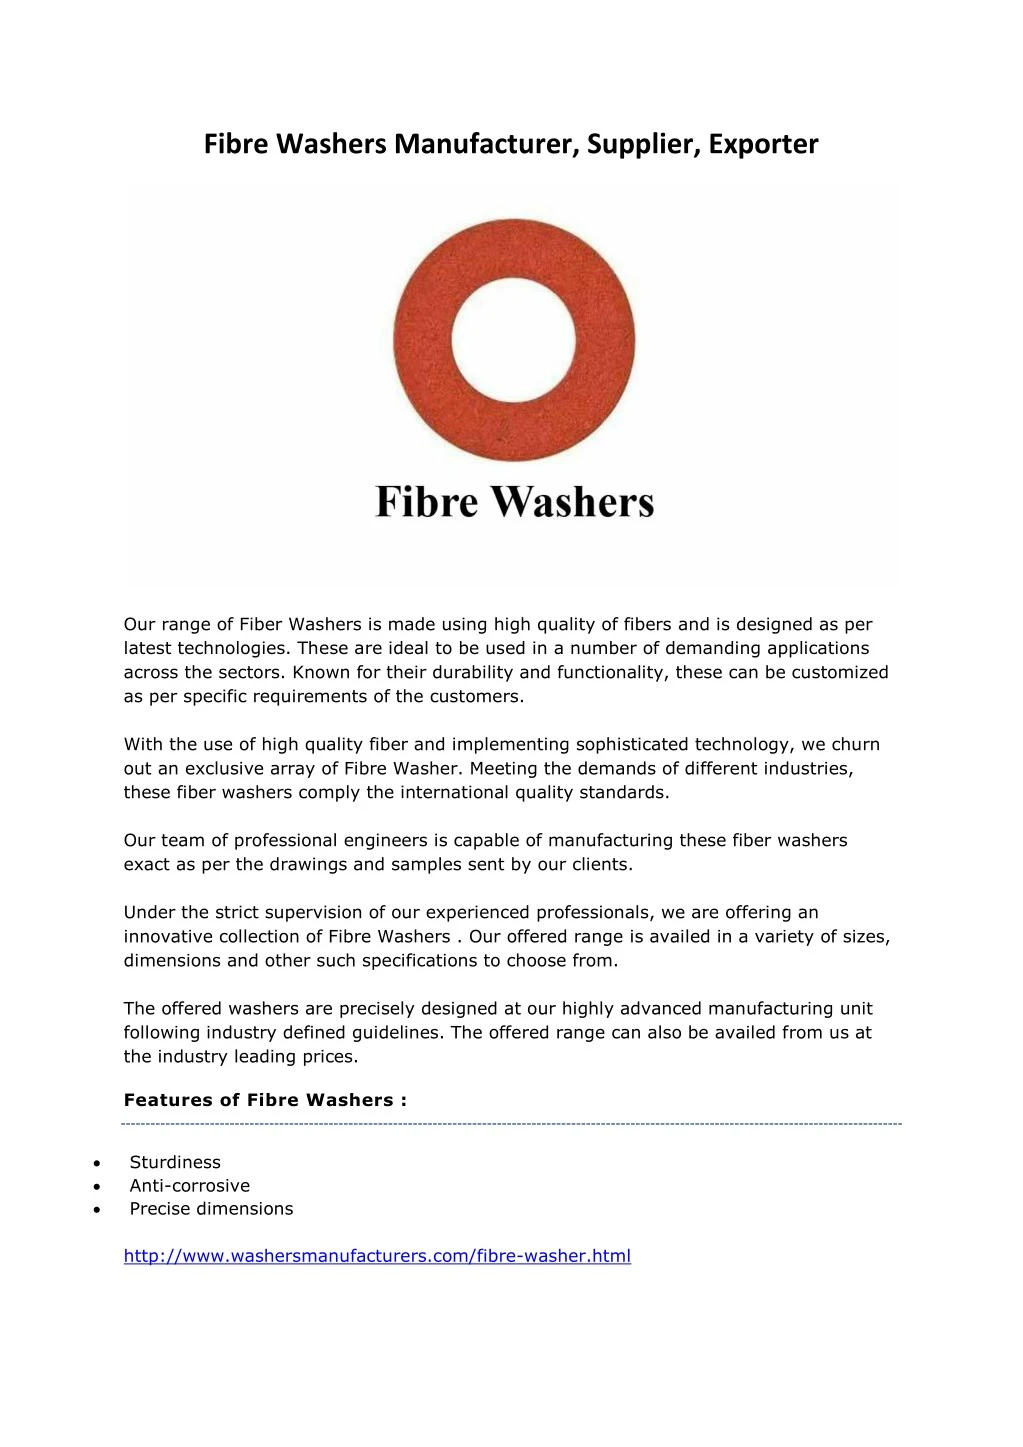 fibre washers manufacturer supplier exporter